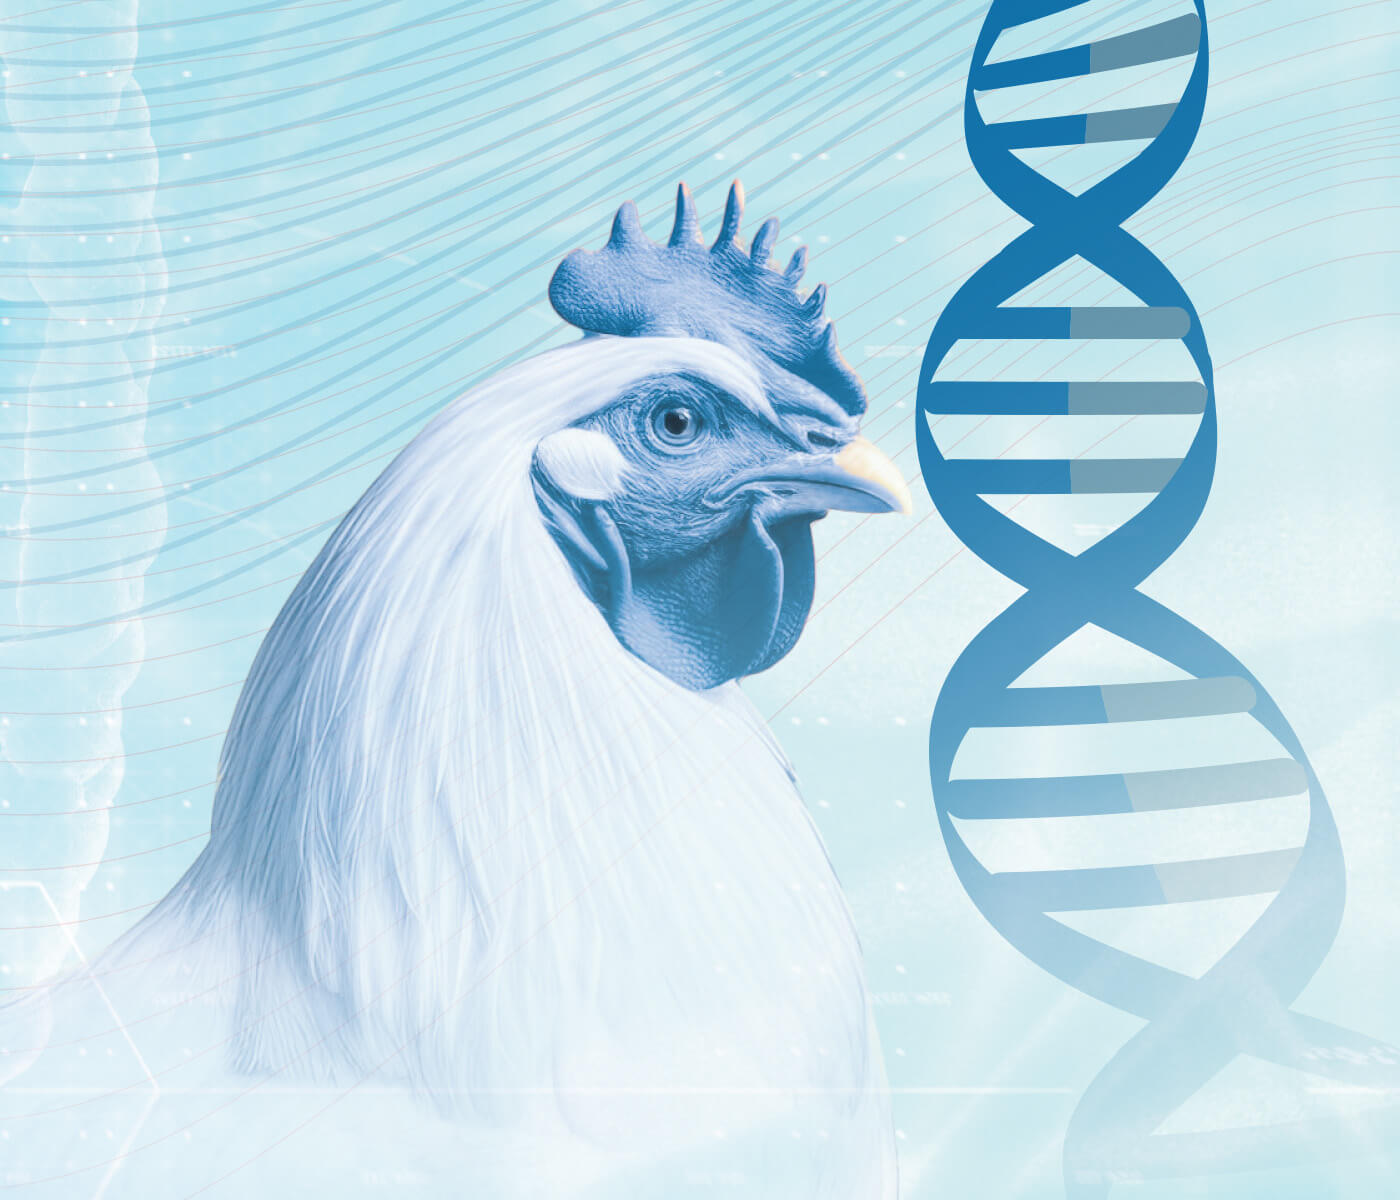 Melhoramento genético garante uma produção futura mais sustentável: seleção genética equilibrada e otimizada com a genômica